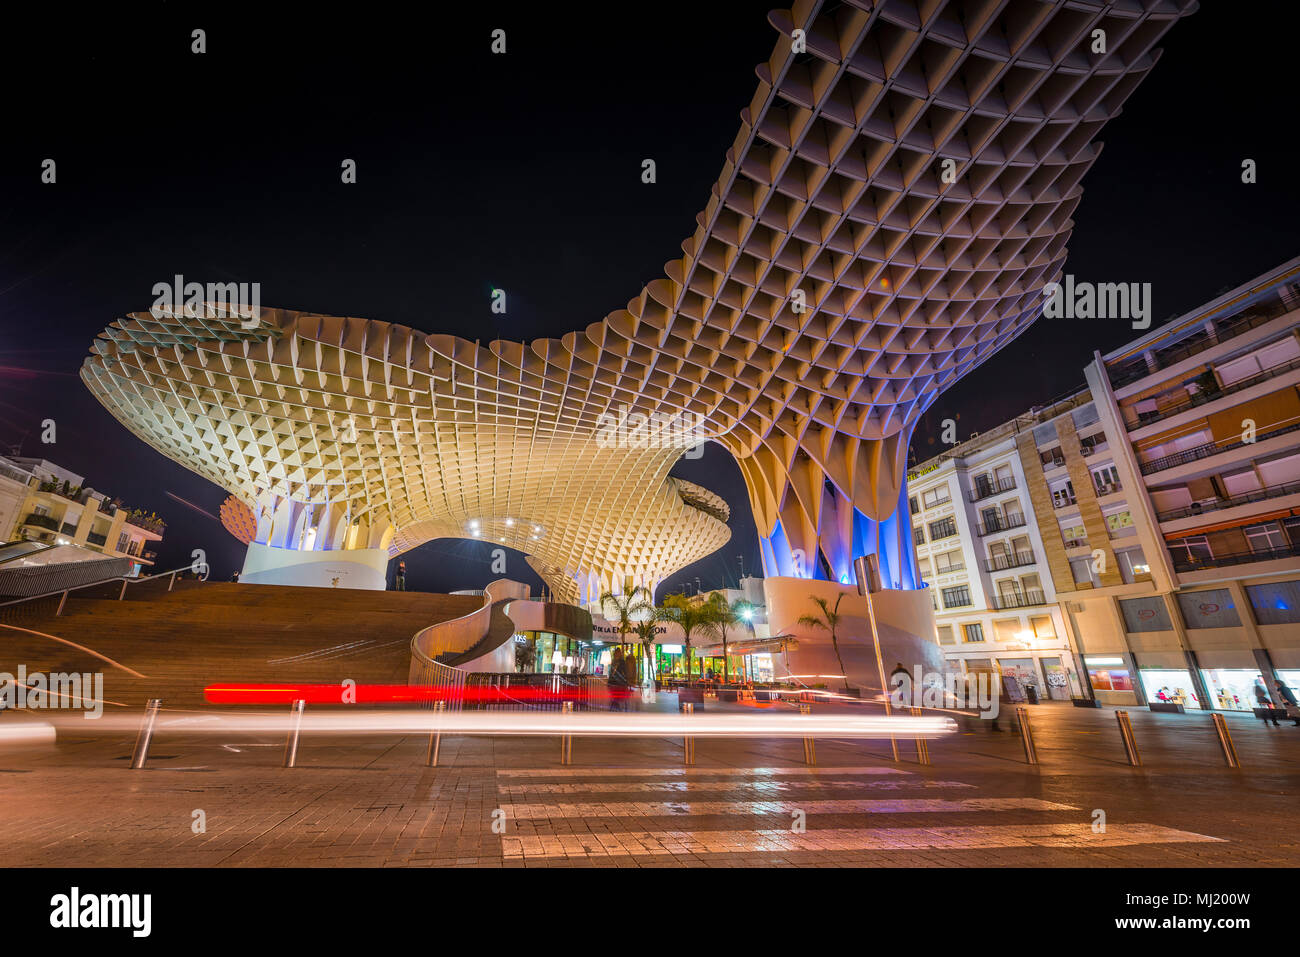 Moderne Architektur, Holz- struktur Metropol Parasol, beleuchtet, mit Spuren von Licht in der Nacht, Plaza de la Encarnacion Stockfoto